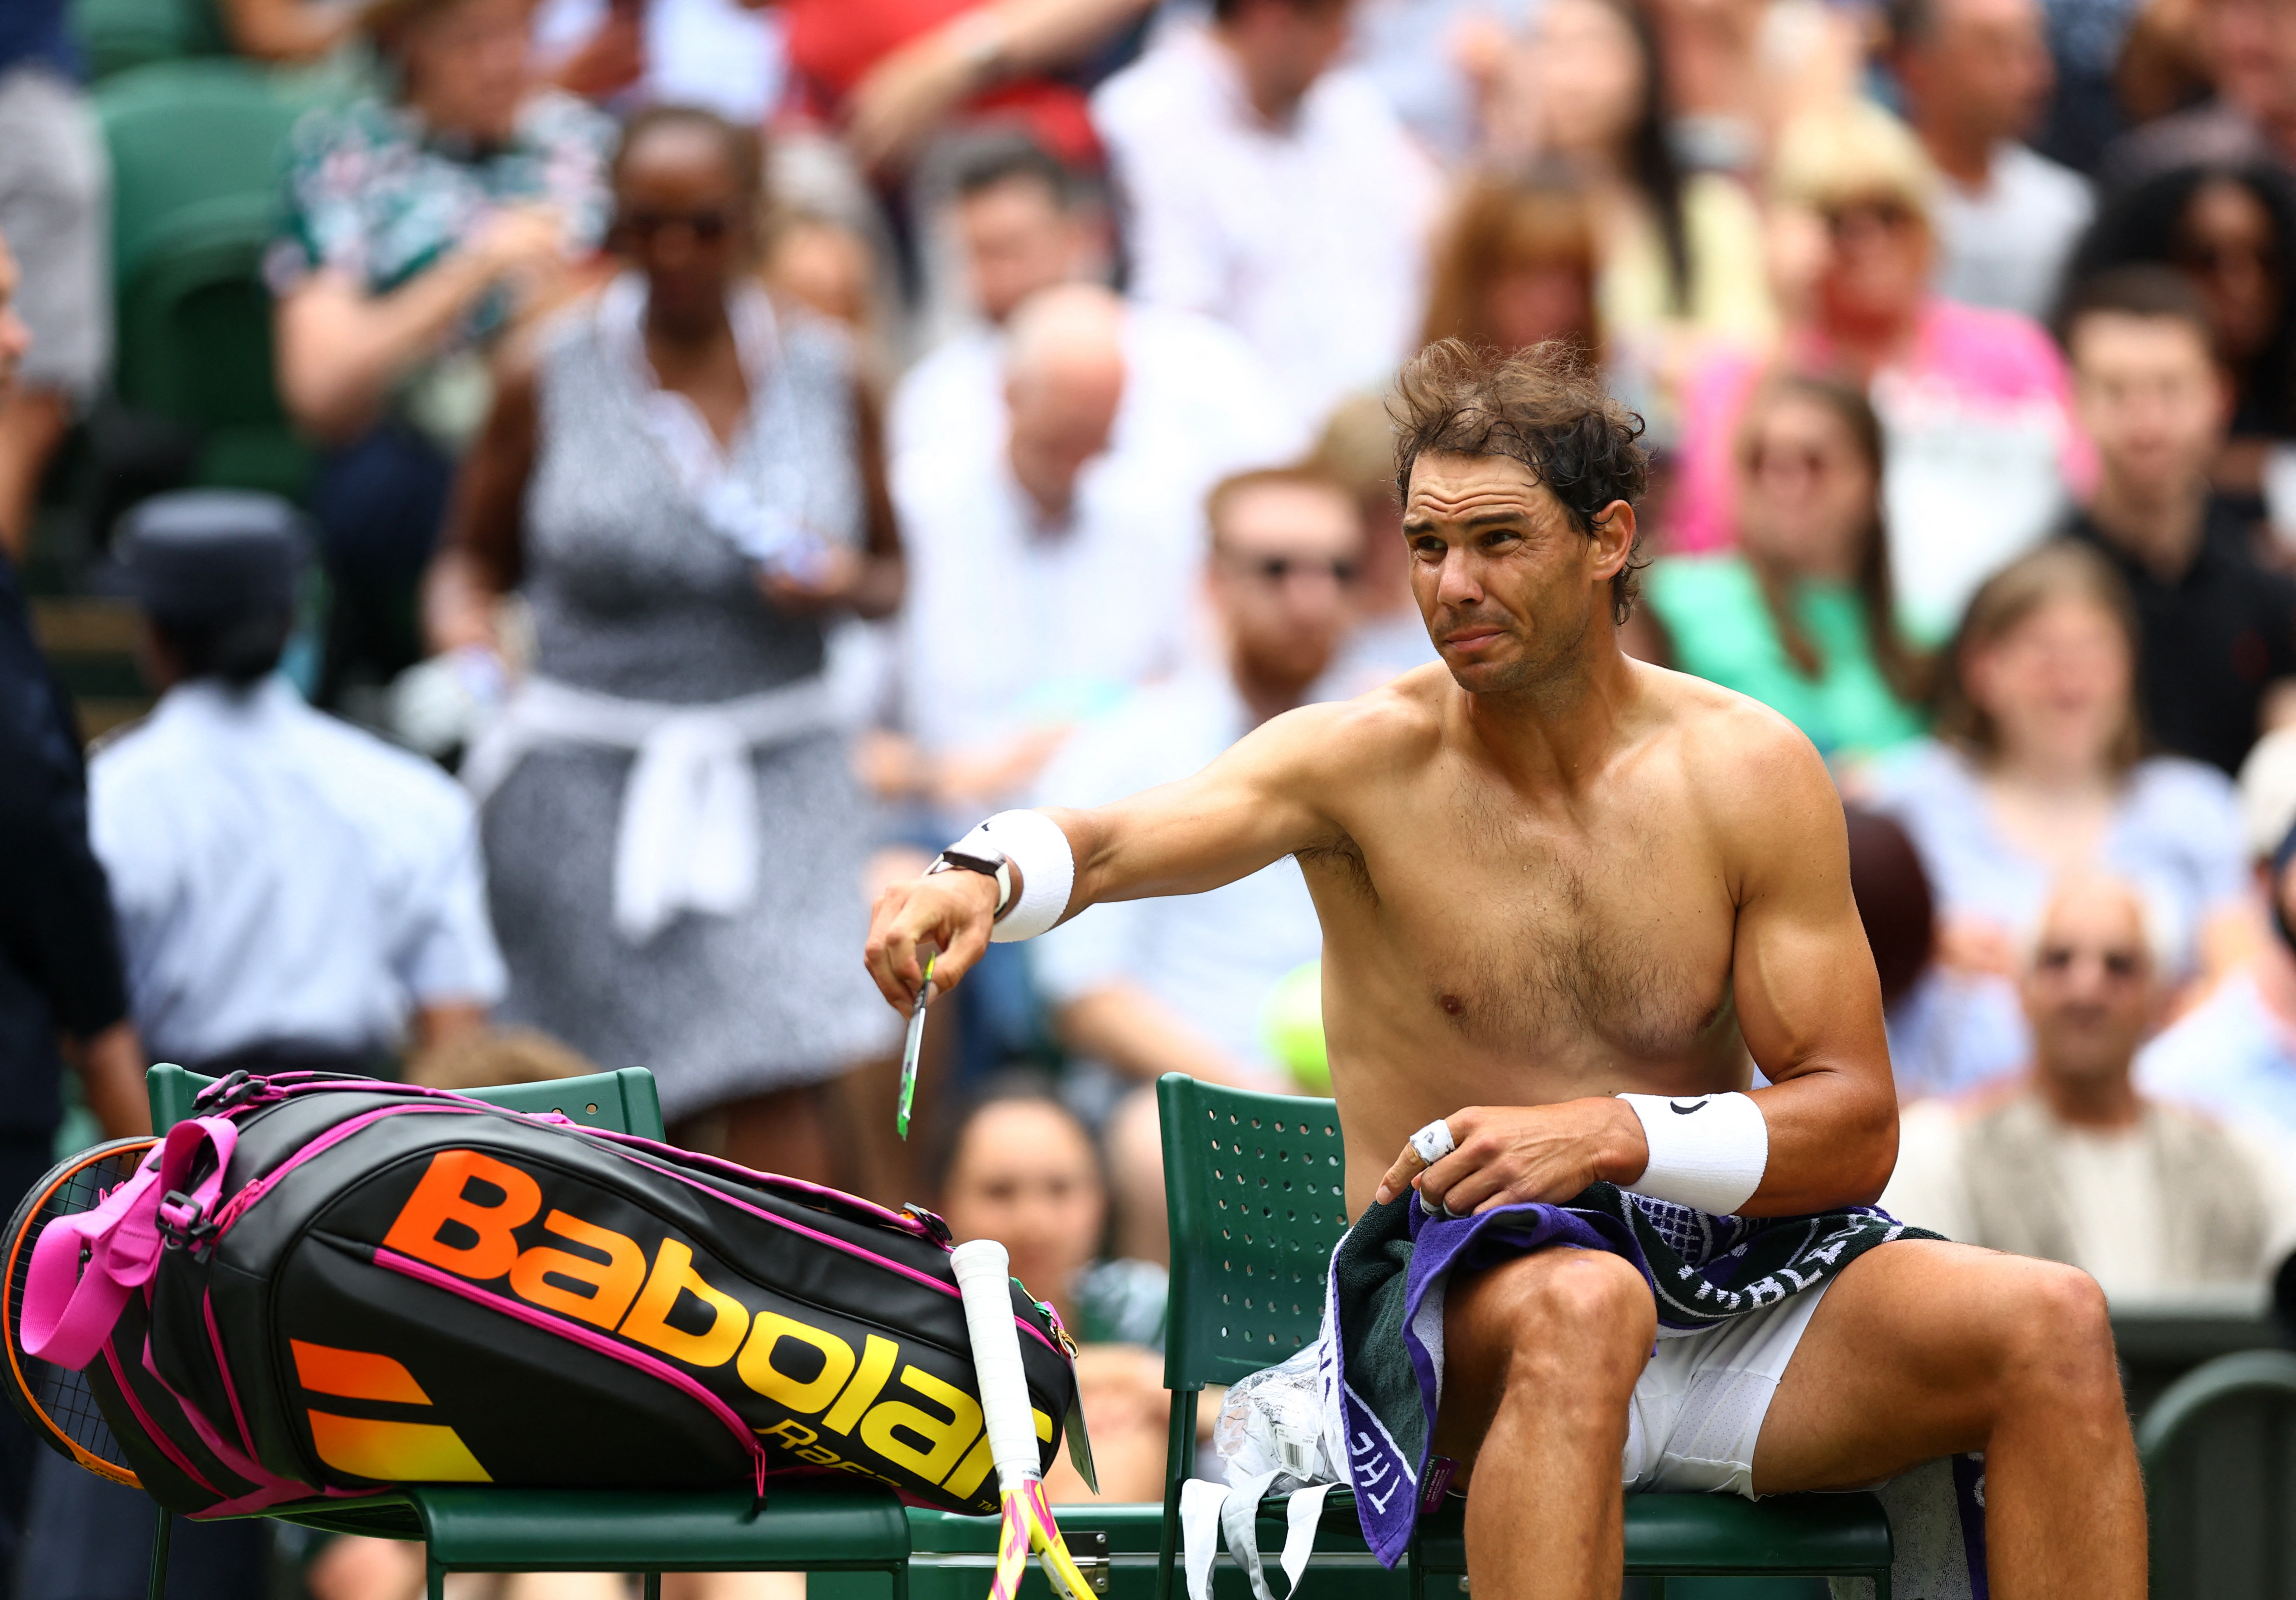 Se conoció la lesión que sufrió Nadal en Wimbledon y hay preocupación de cara a las semifinales: “Hay algo que no funciona”